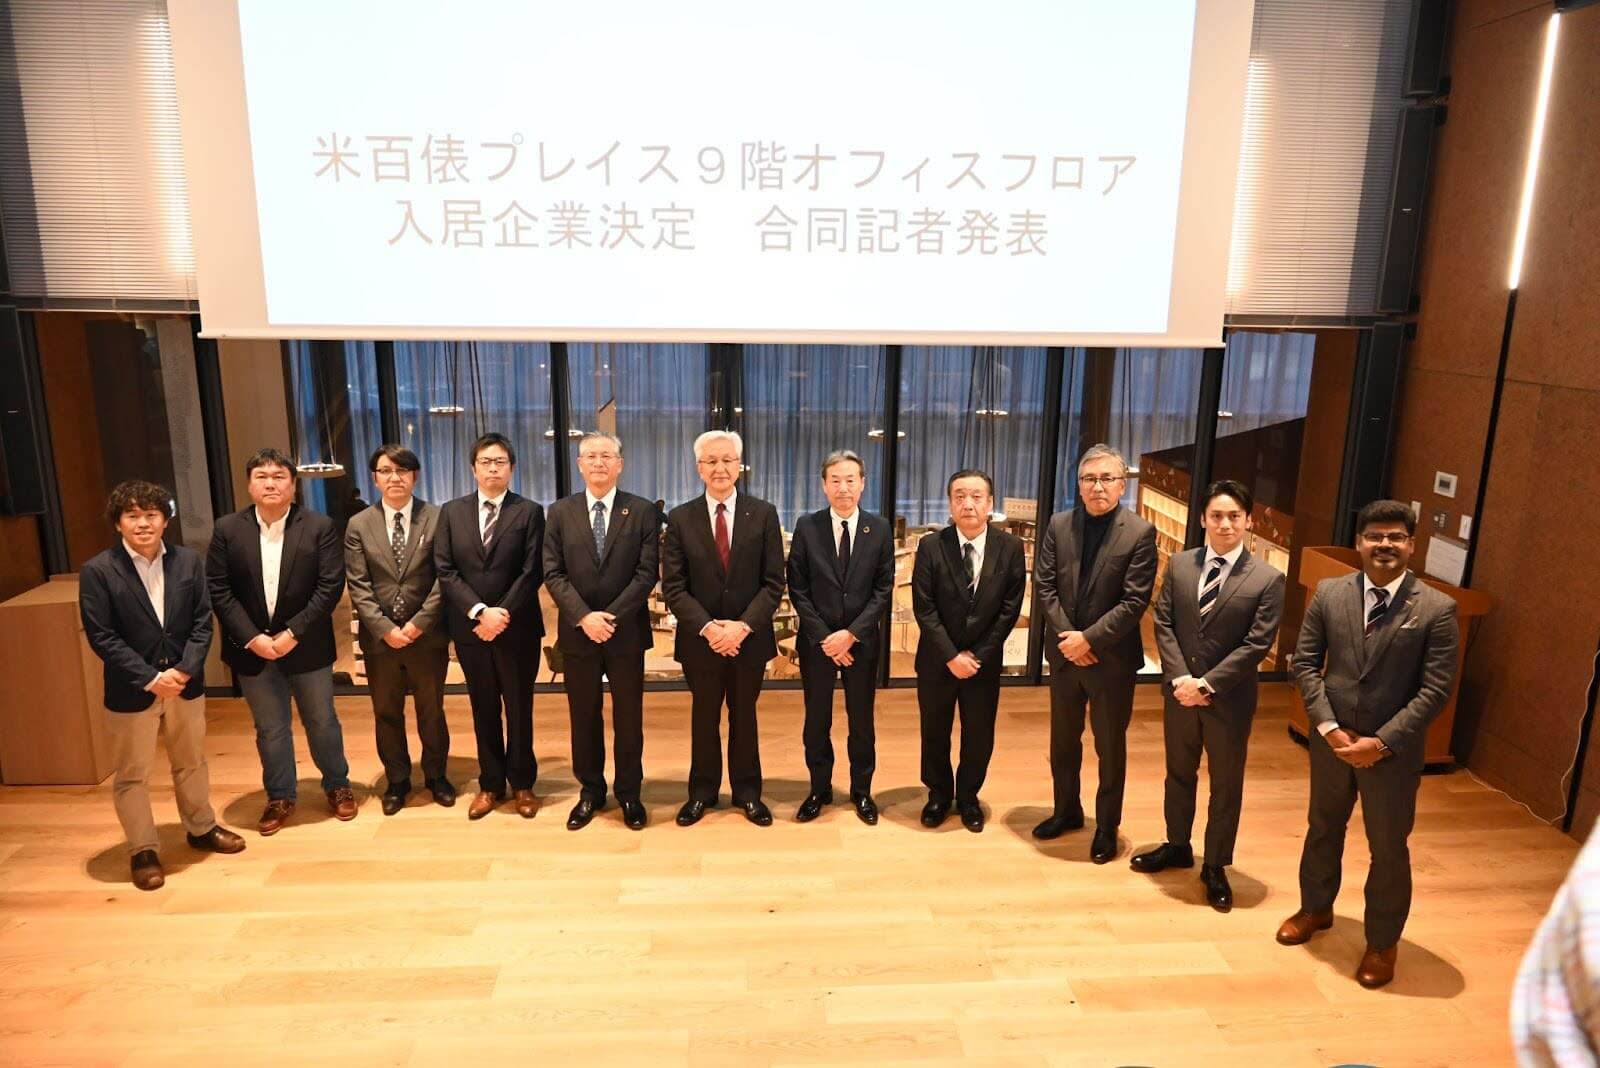 新潟県の長岡市役所が主催した合同開所式